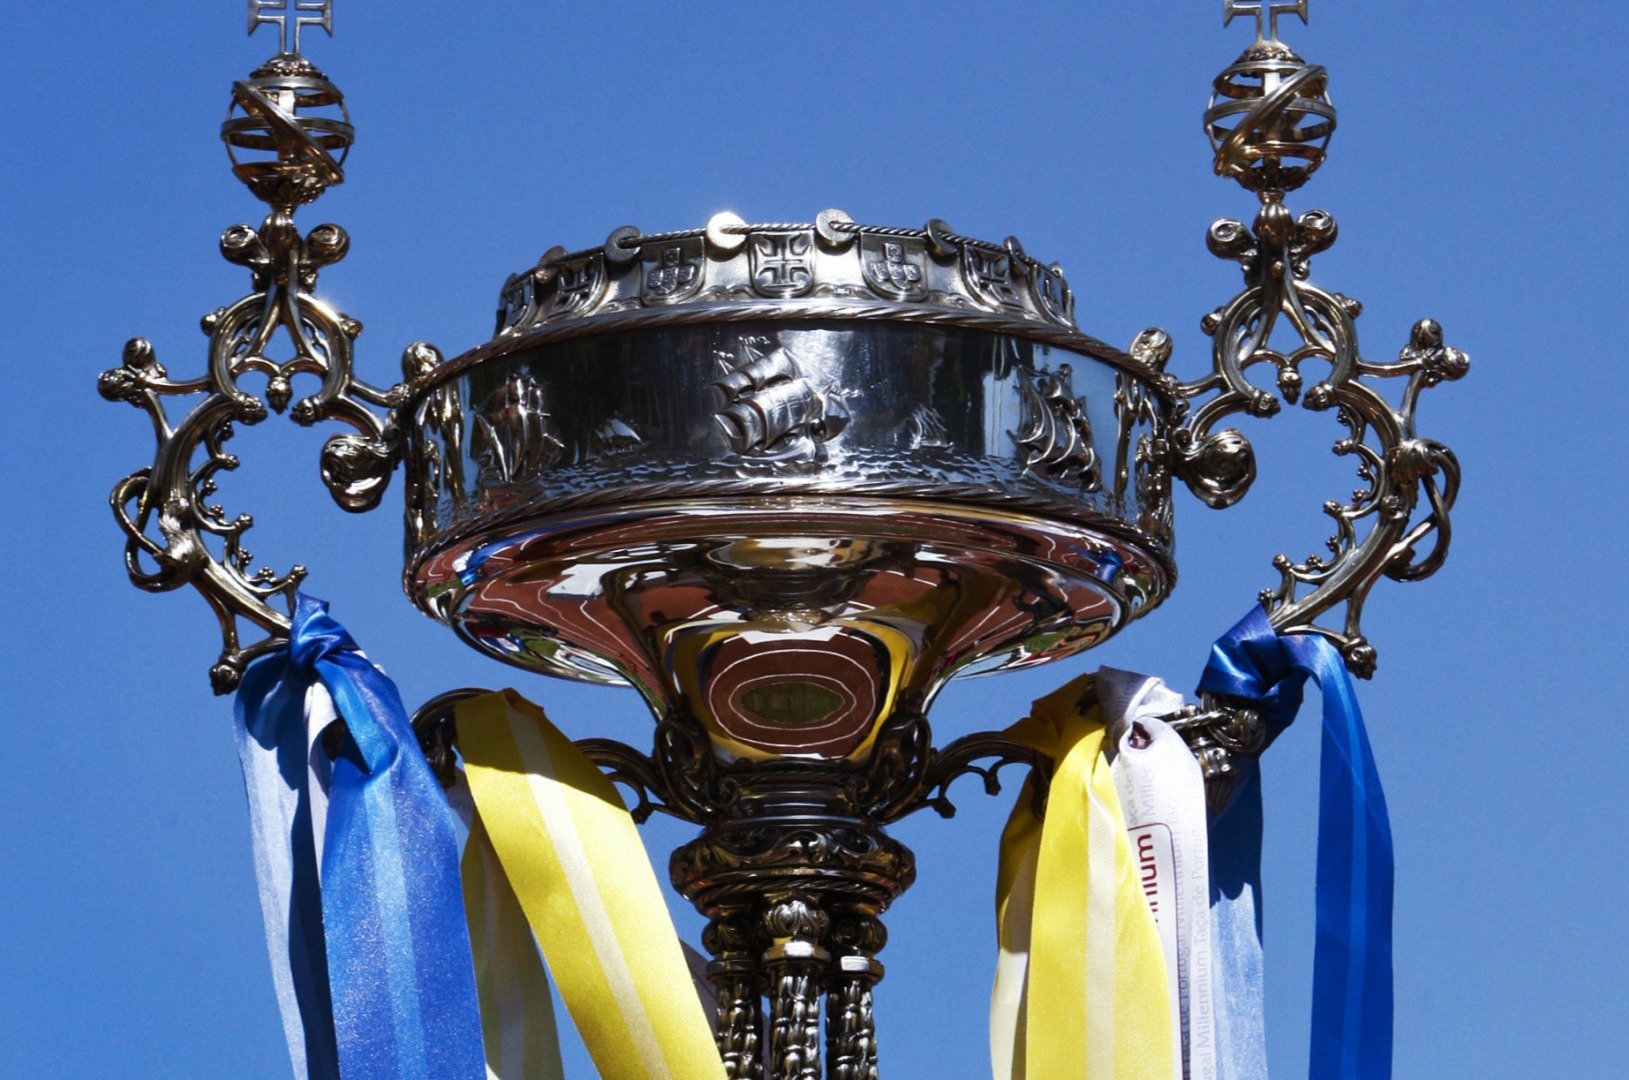 Jogos da 2.ª fase da Taça de Portugal Alfaloc já são conhecidos